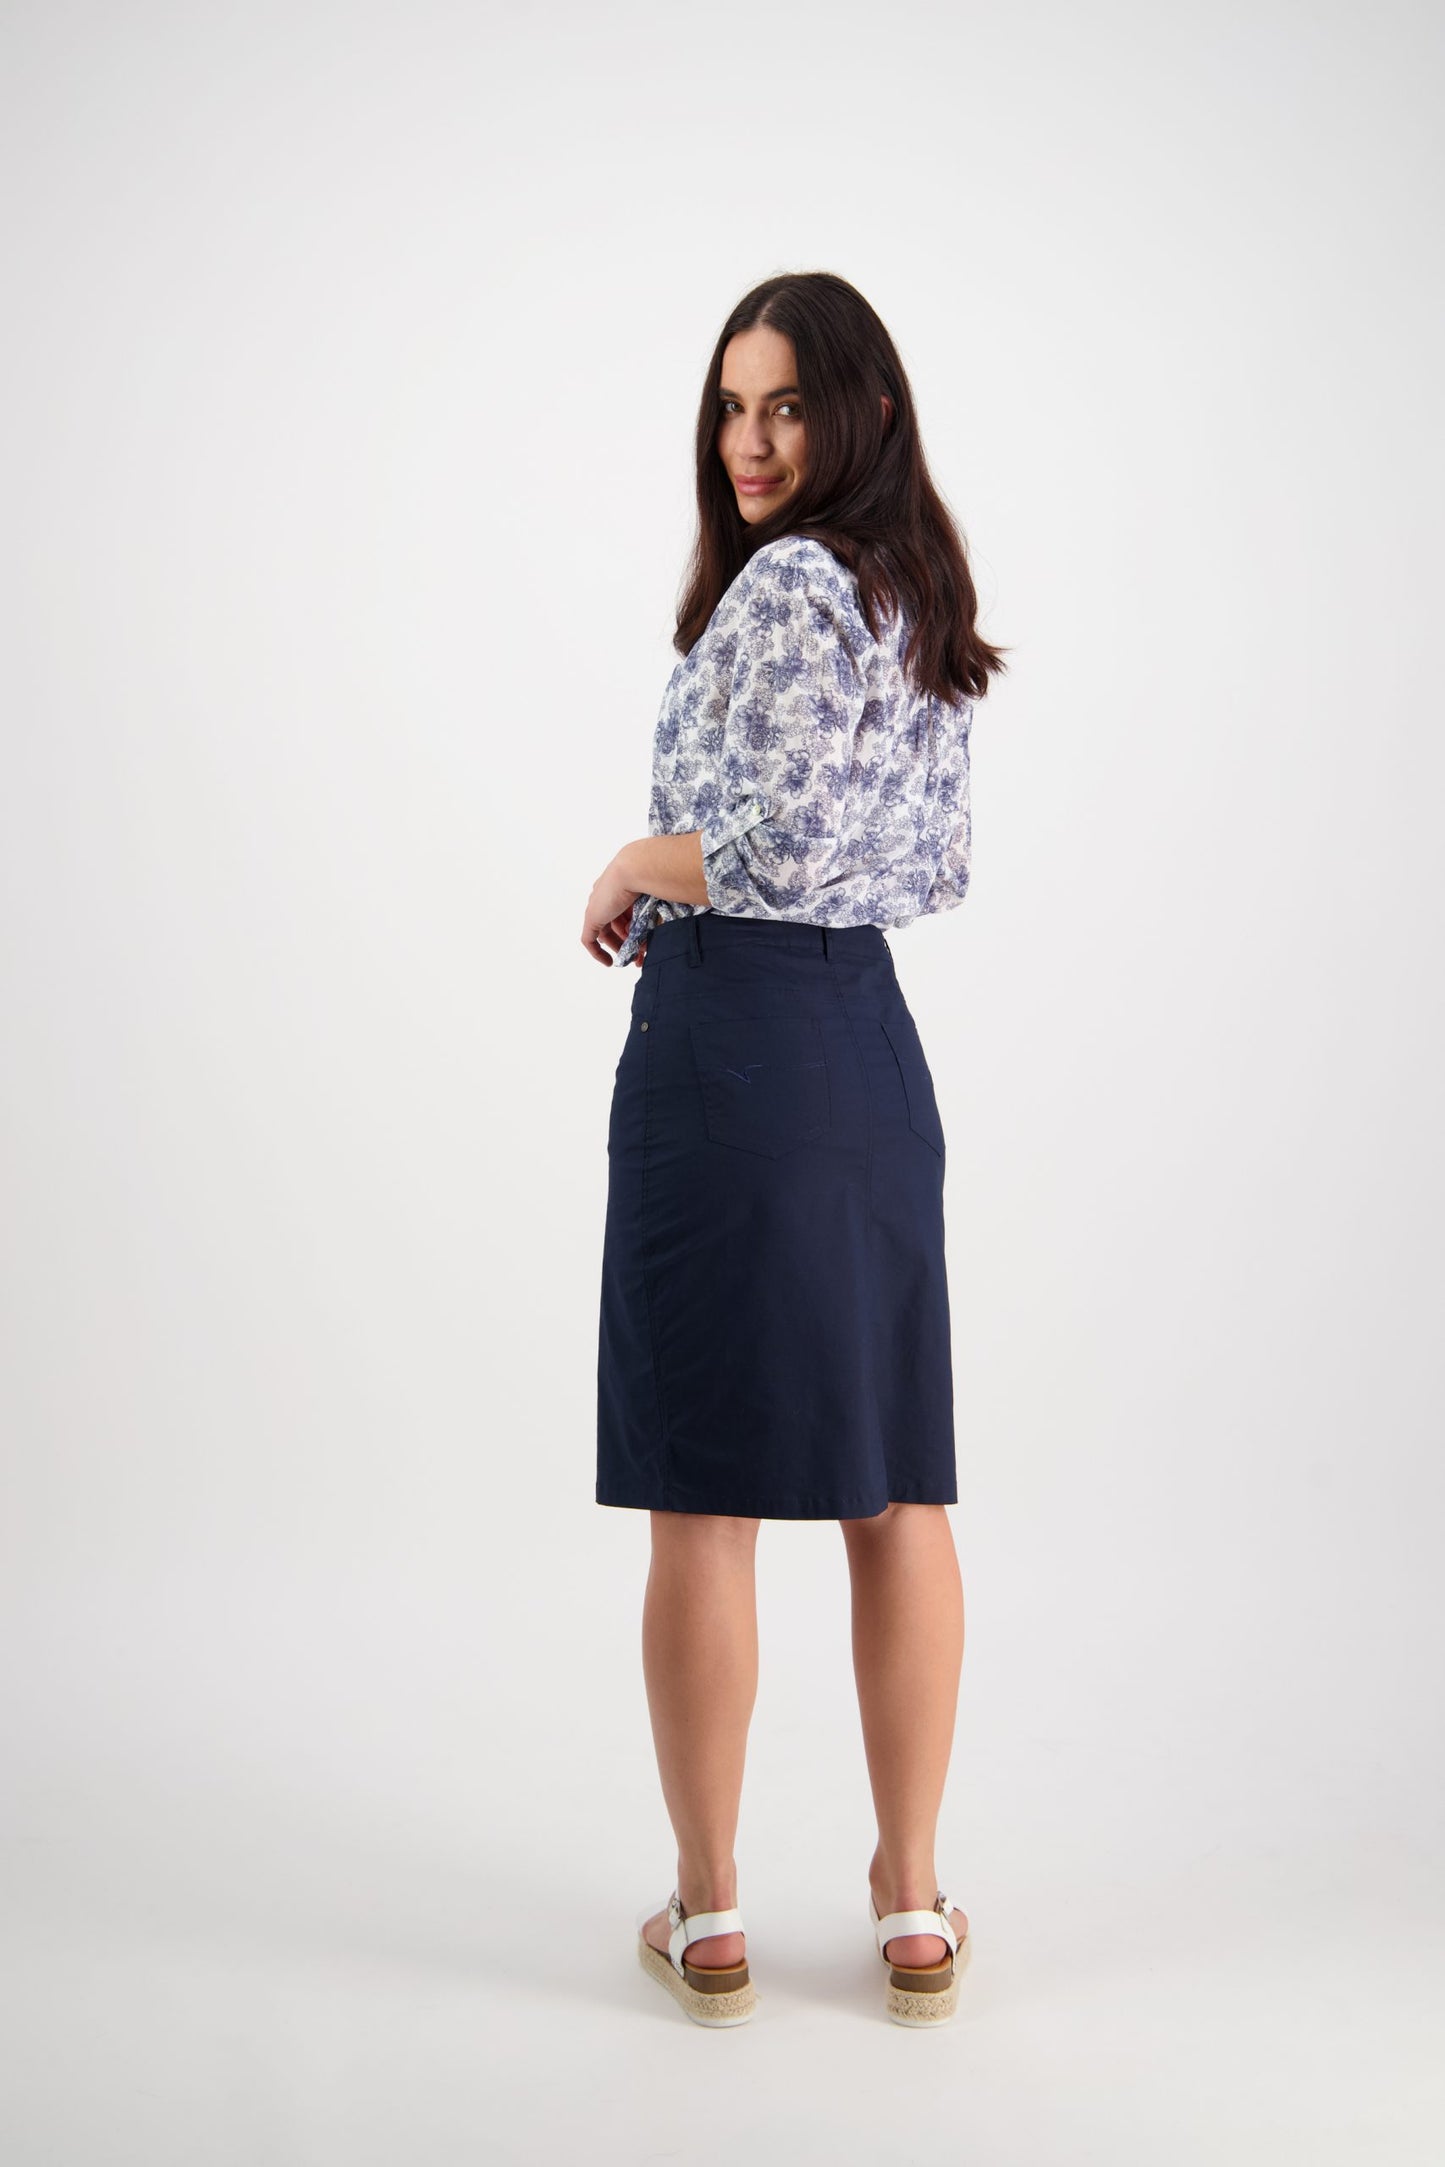 Vassalli - 372AV - Poplin Skirt with Centre Back Vent - Navy -50% off - 1 x size 8 left